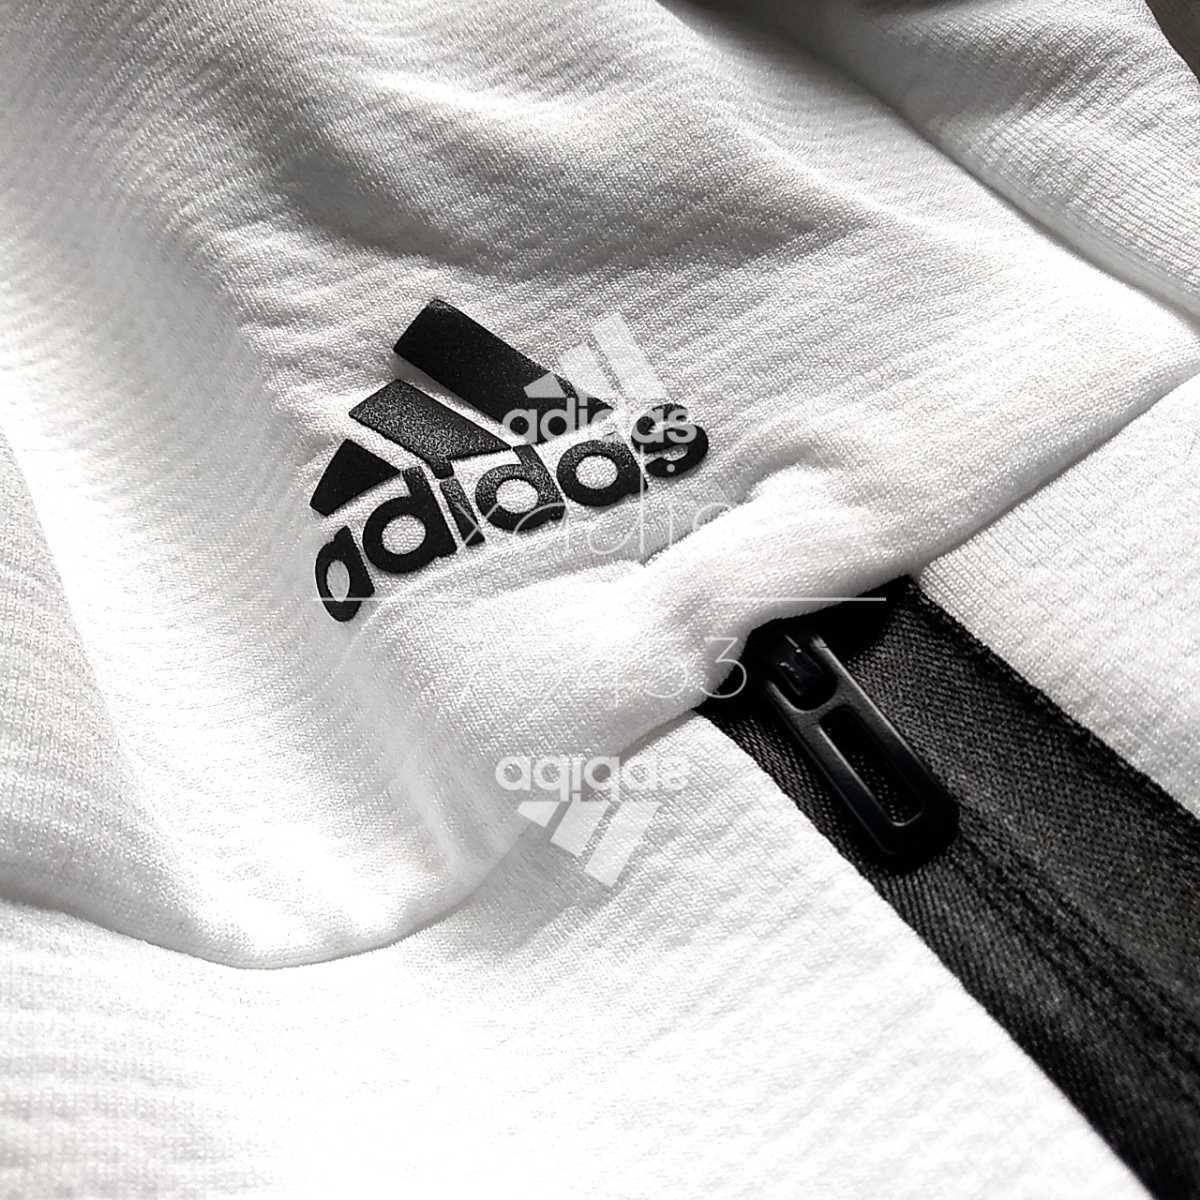 正規品 adidas アディダス ジャージ ジャケット 白 ホワイト 紺 